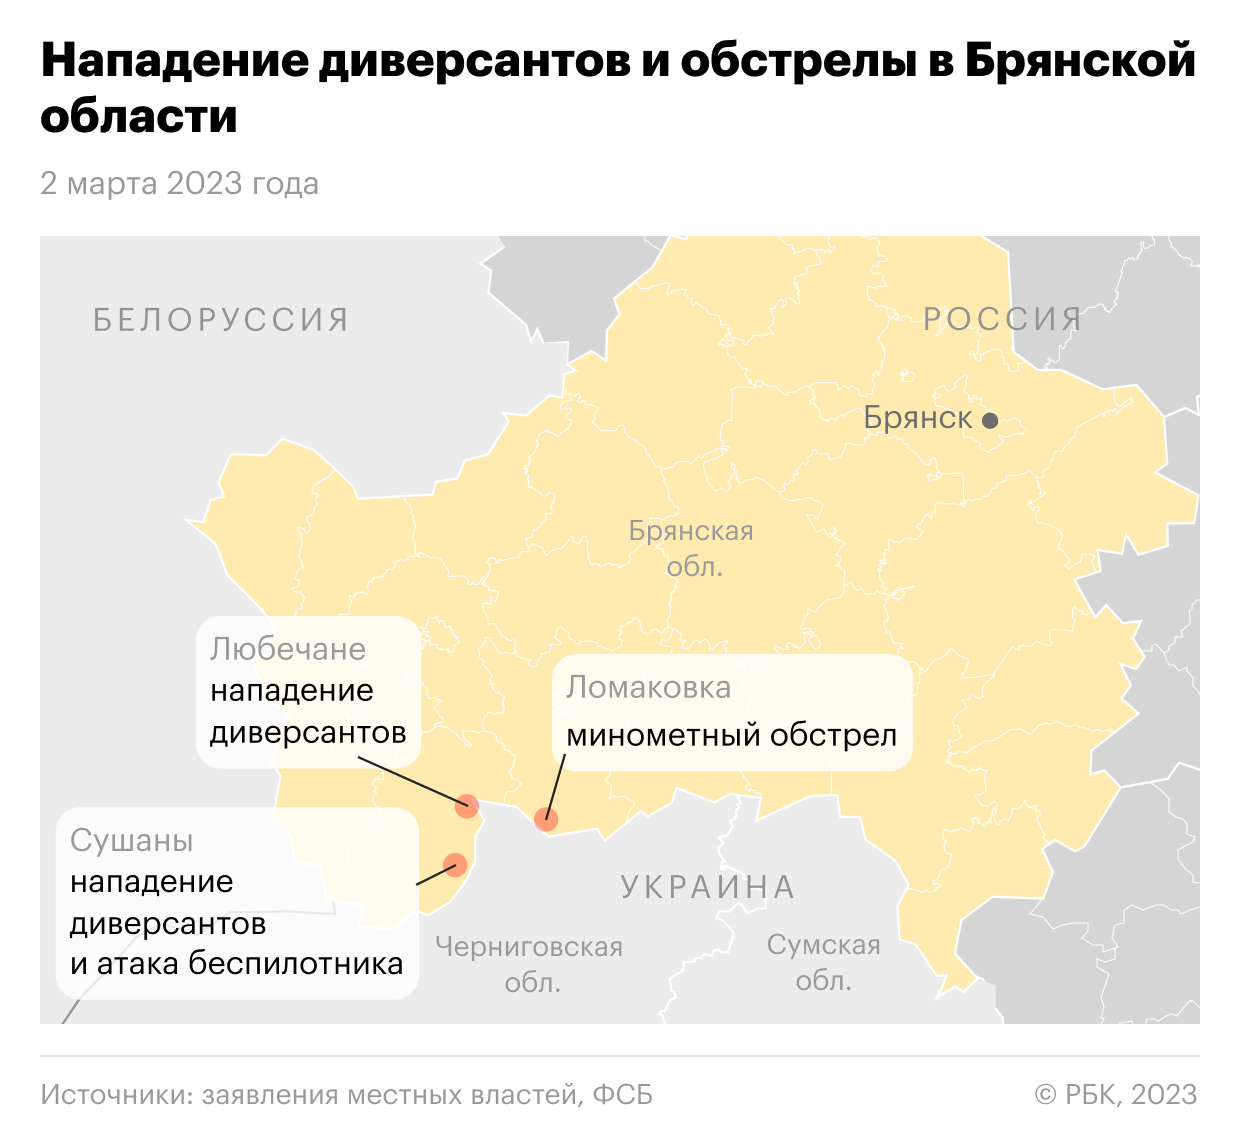 ФСБ сообщила о массированном ударе по диверсантам в Брянской области